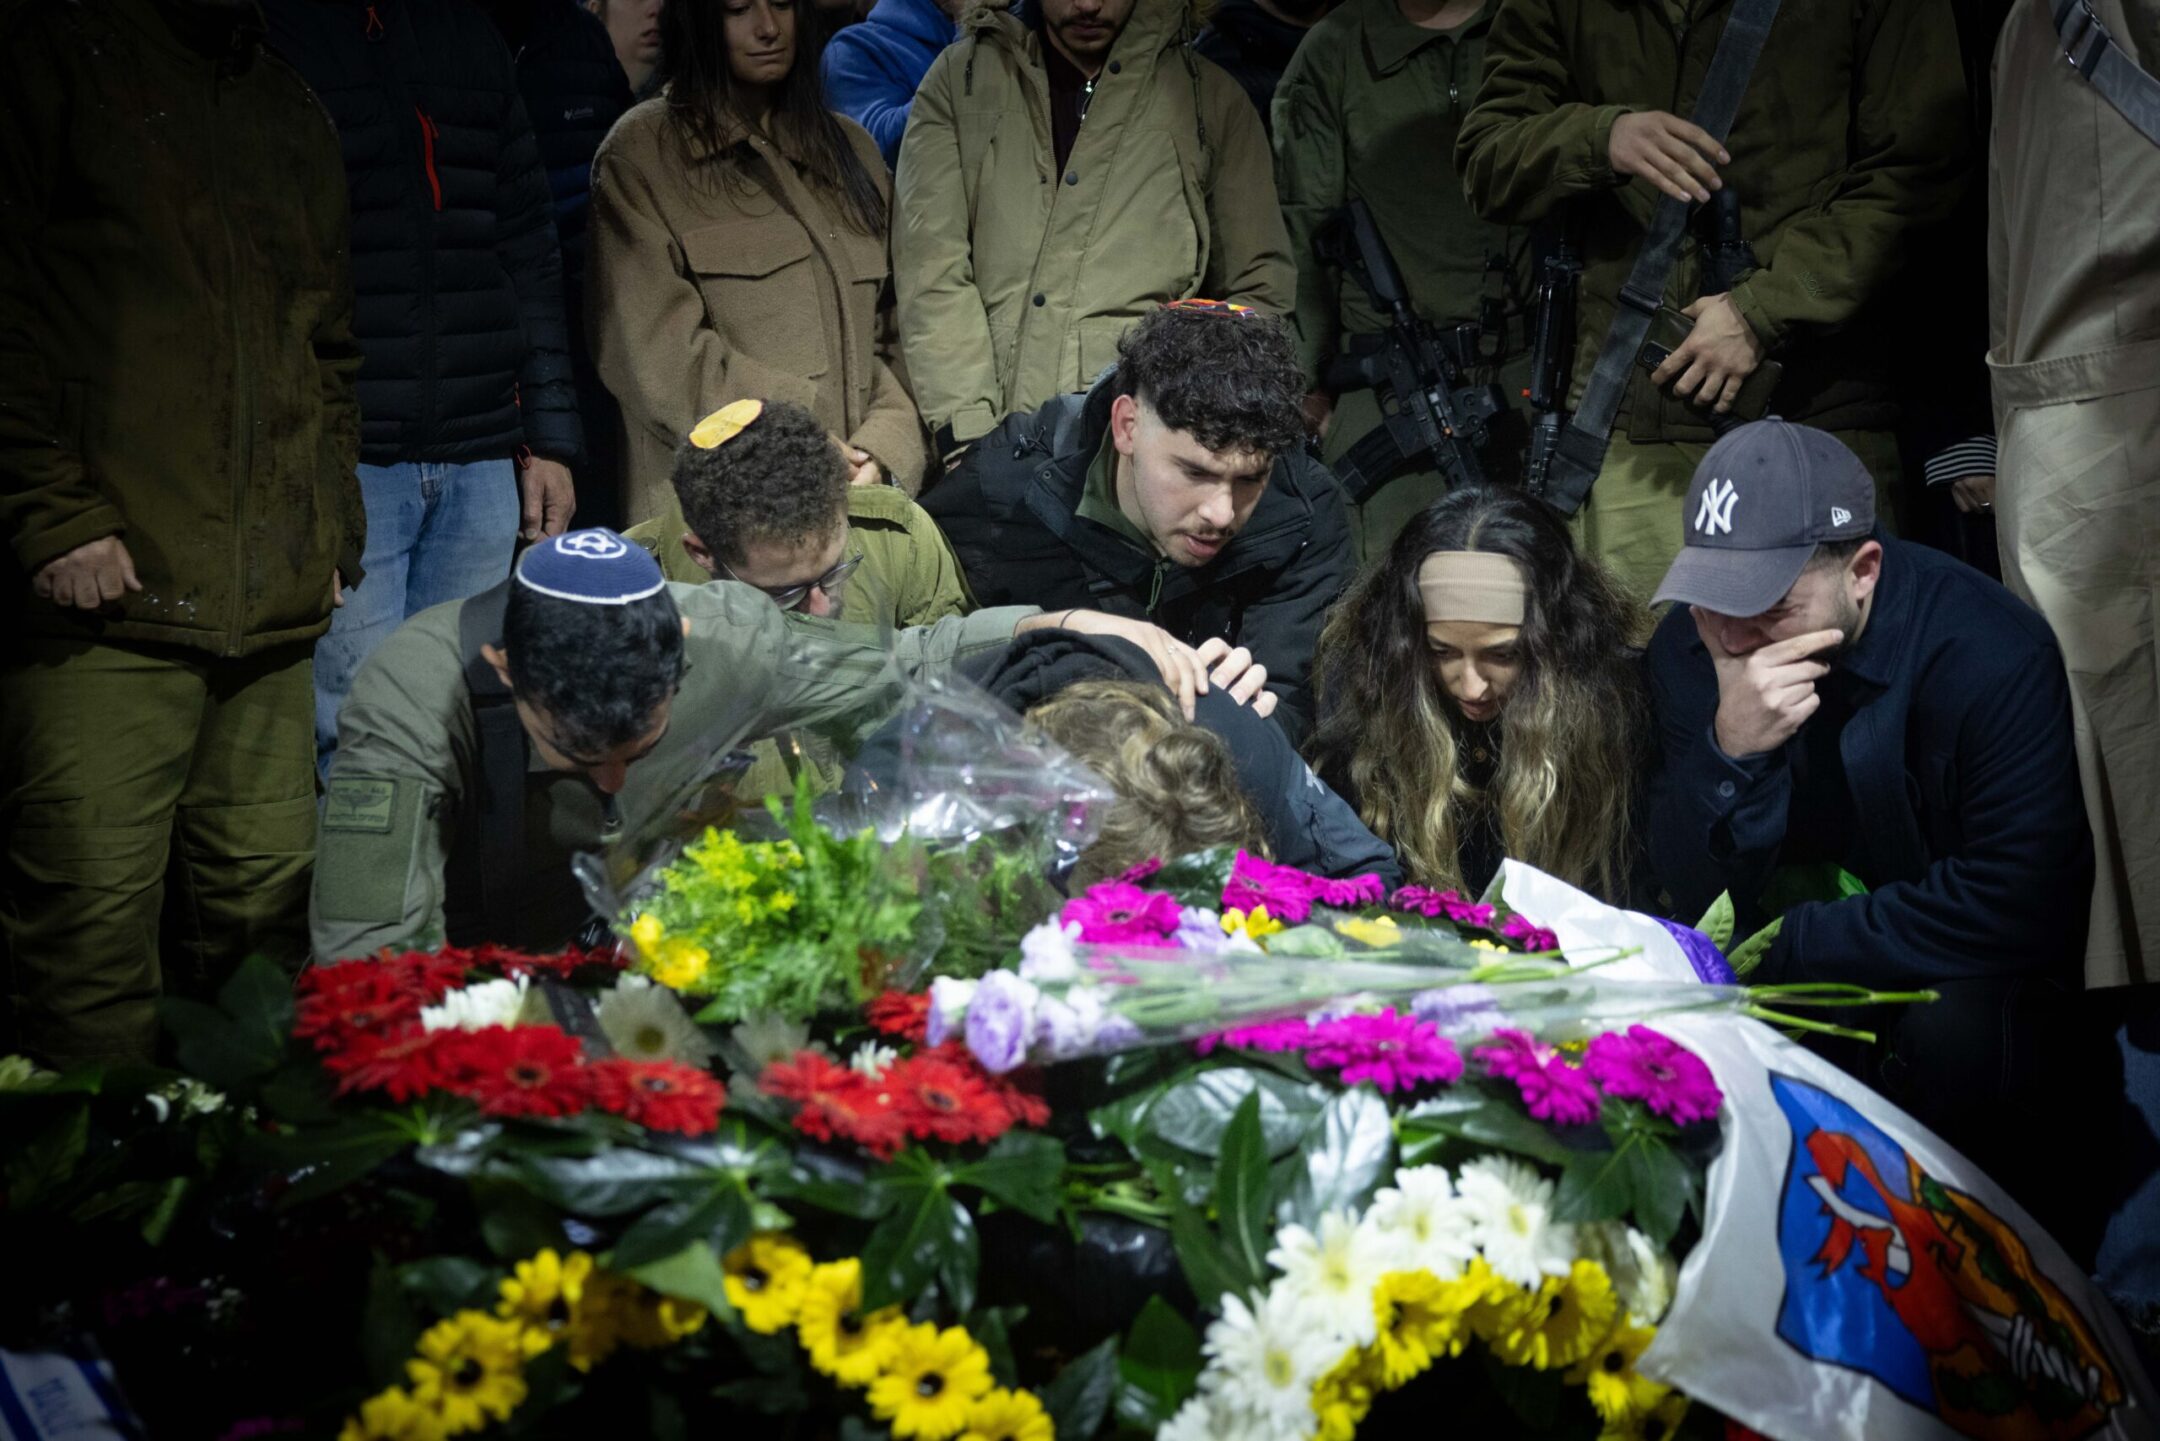 24 חיילי צה"ל נהרגו ביום הקטלני ביותר של ישראל מאז ה-7 באוקטובר, על רקע ויכוח גובר בשאלה האם ניתן לנצח במלחמה